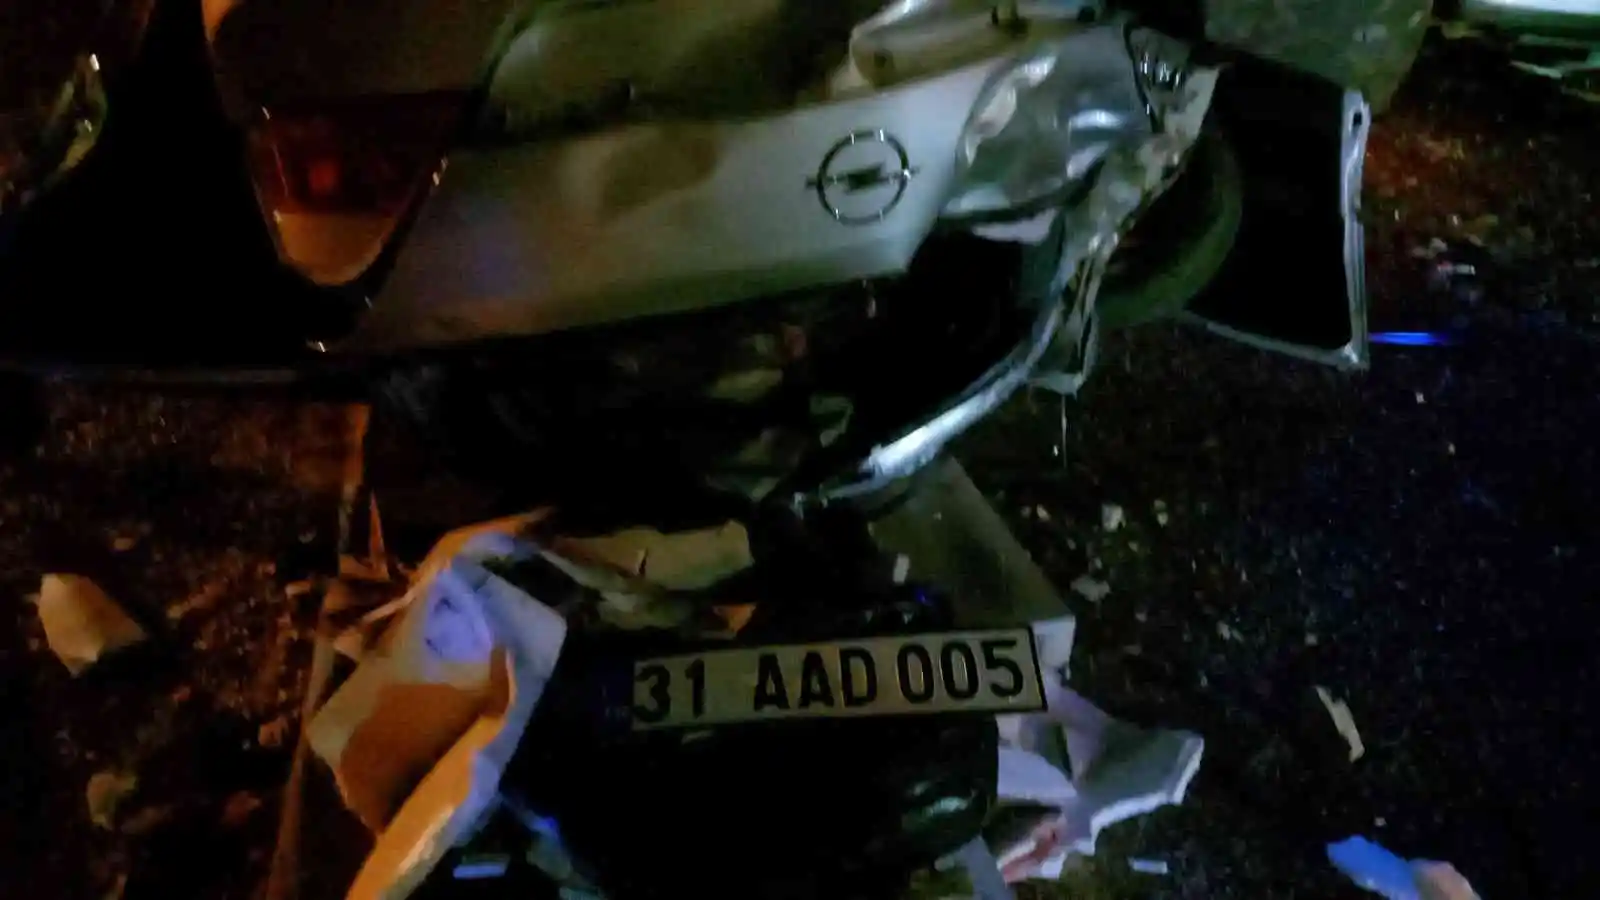 Adana’da yolcu minibüsü ile otomobil çarpıştı: 13 yaralı
